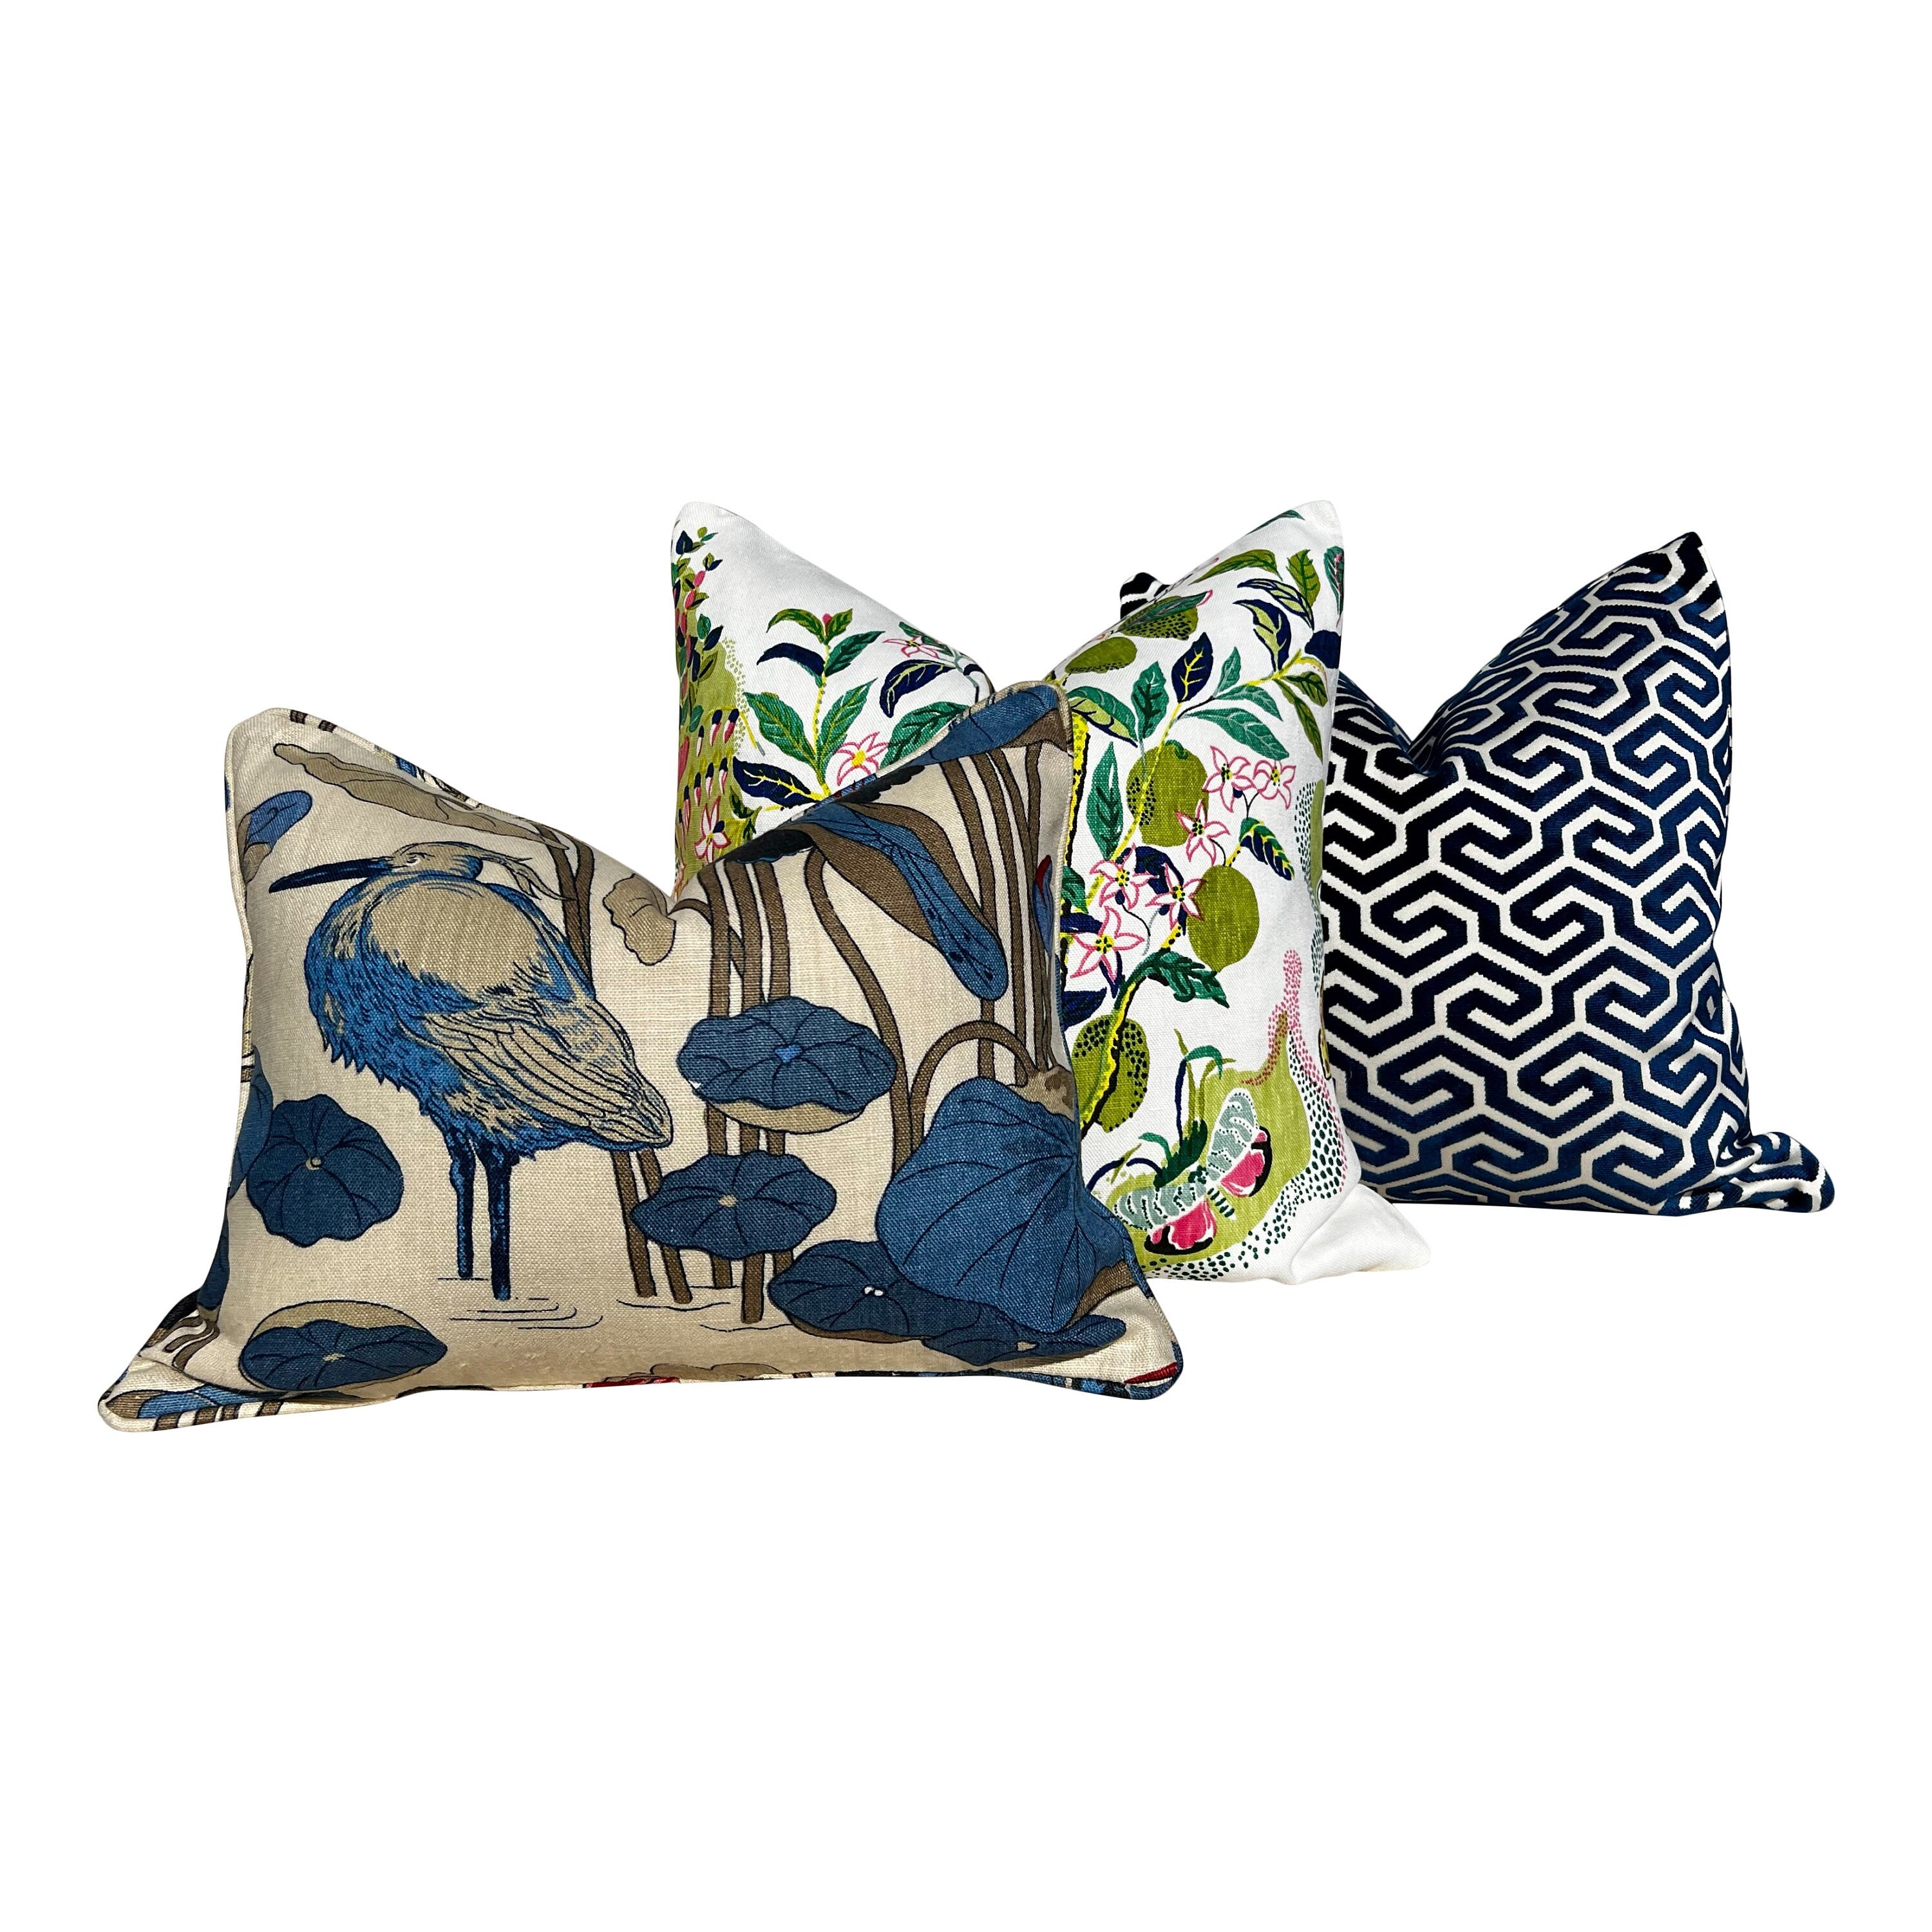 Schumacher Ming Fret Velvet Pillow in Navy Blue. Velvet Lumbar Pillow, Designer Pillows, Chinoiserie Pillow, Maze Velvet Pillow Covers